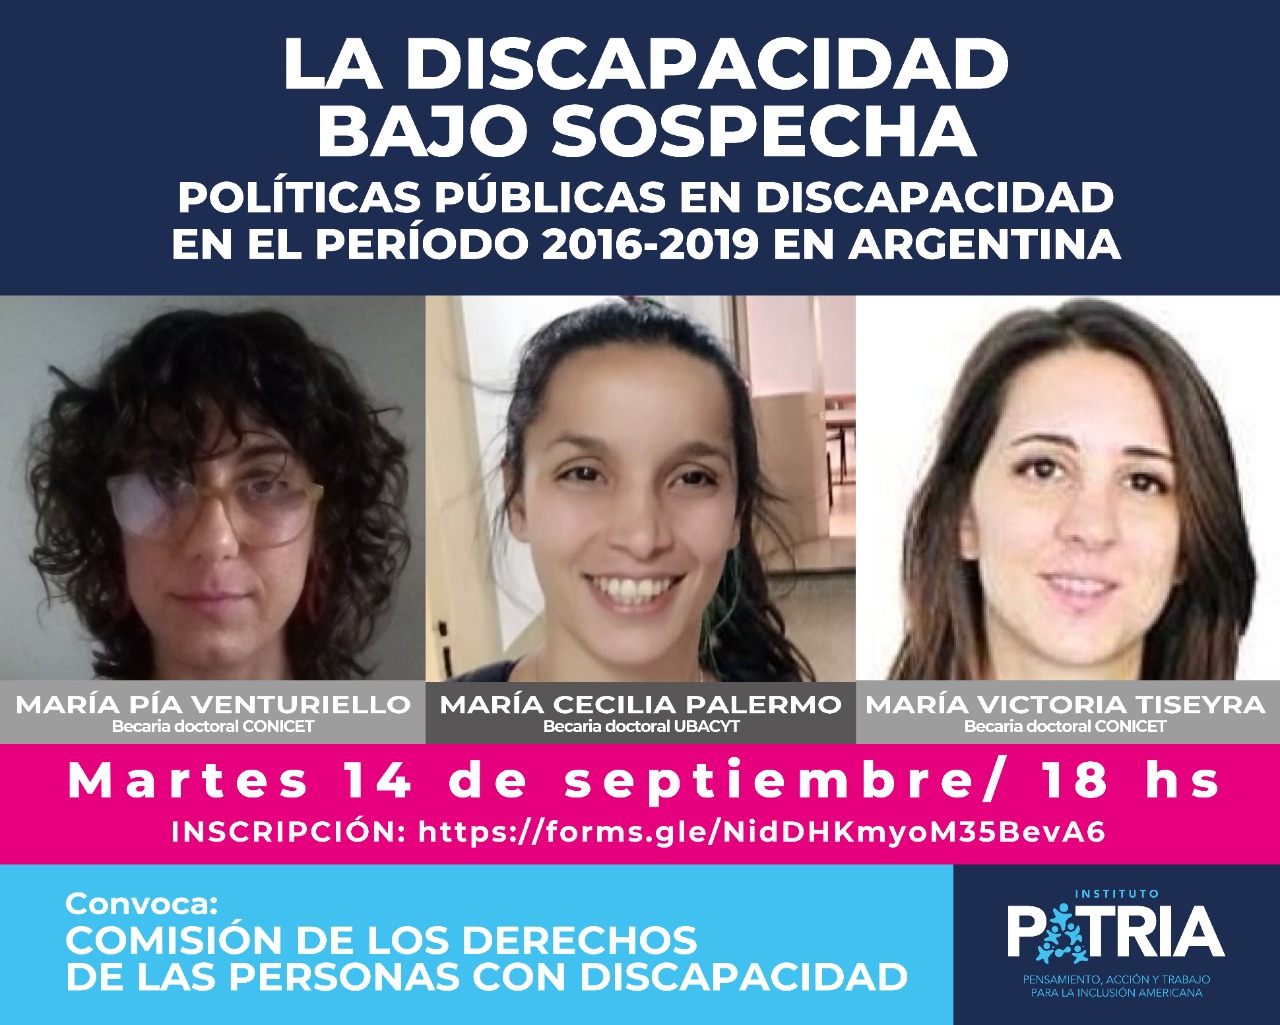 La discapacidad bajo sospecha. Políticas públicas en discapacidad en el período 2016-2019 en Argentina